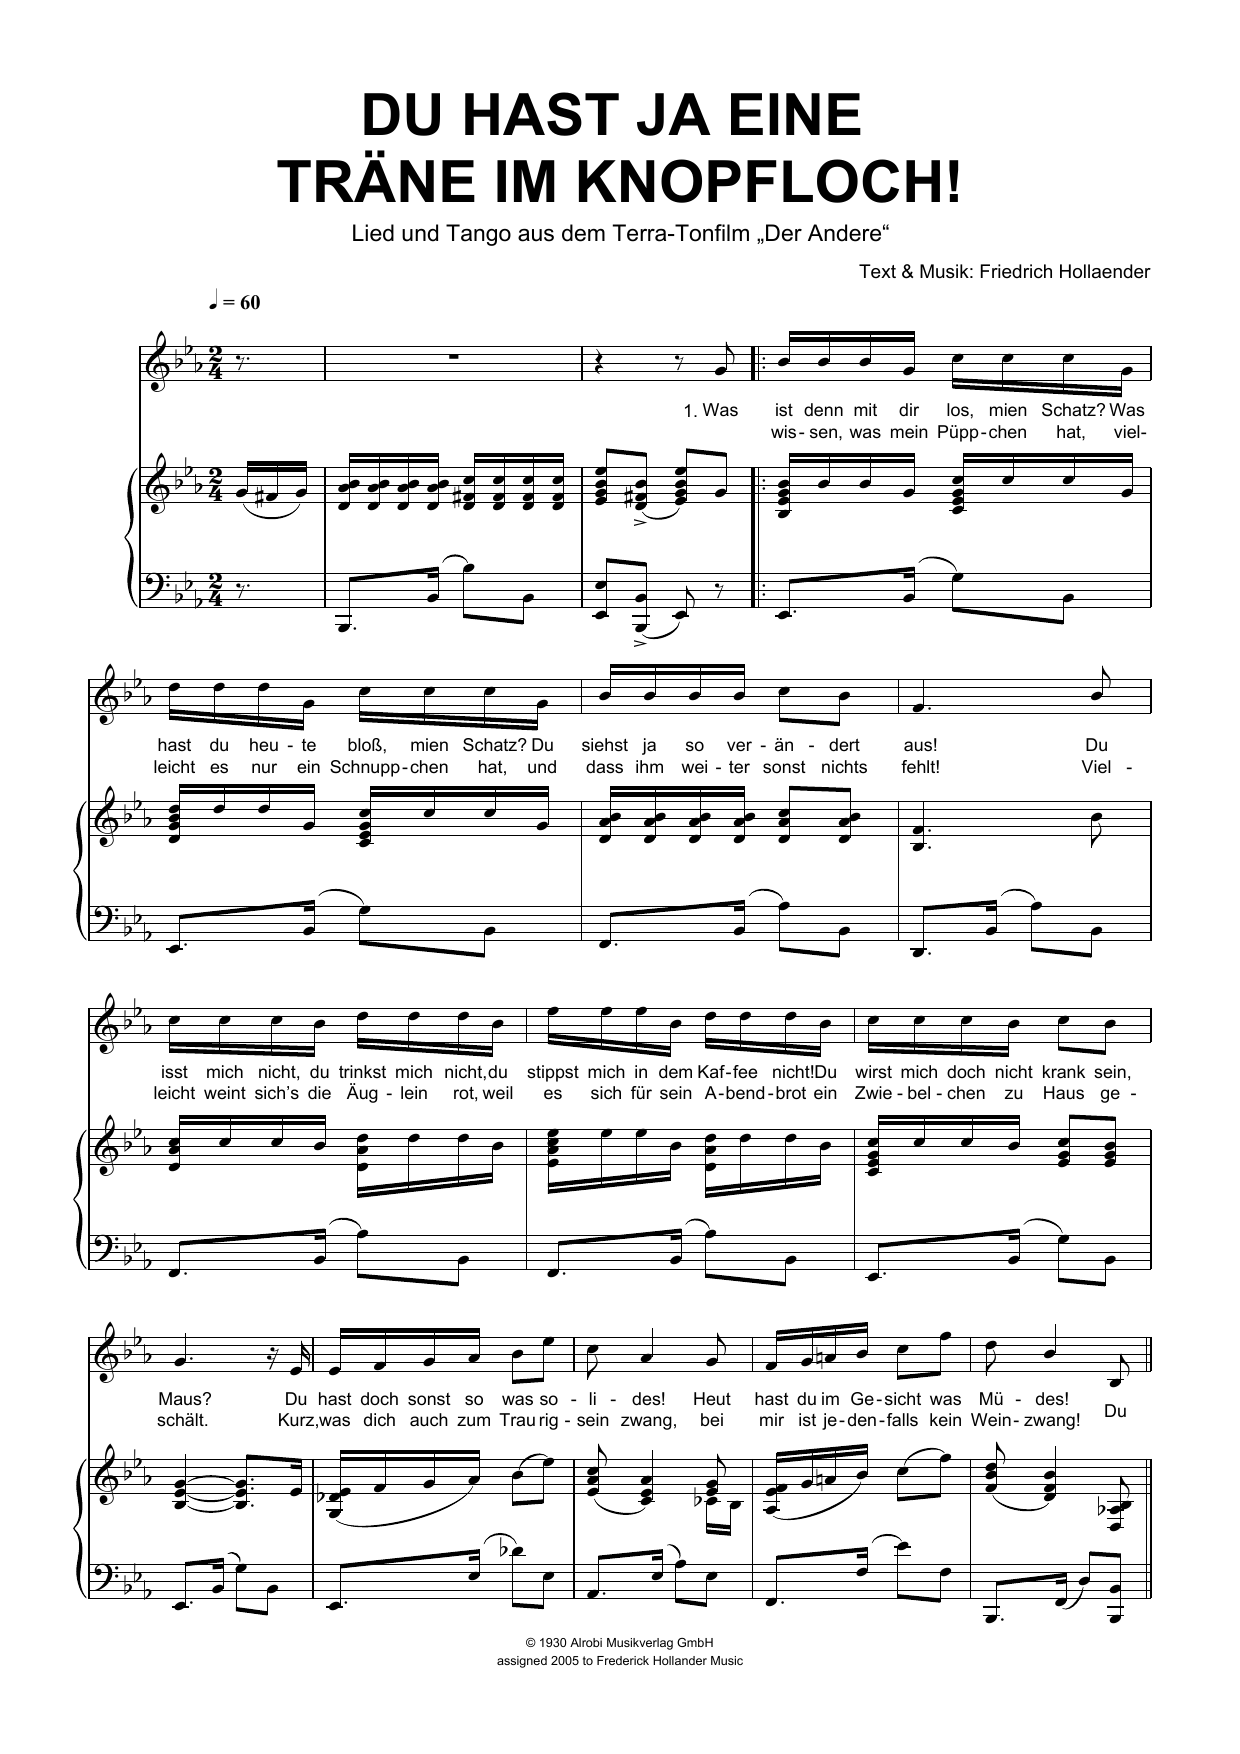 Friedrich Hollaender Du Hast Ja Eine Trane Im Knopfloch! Sheet Music Notes & Chords for Piano & Vocal - Download or Print PDF